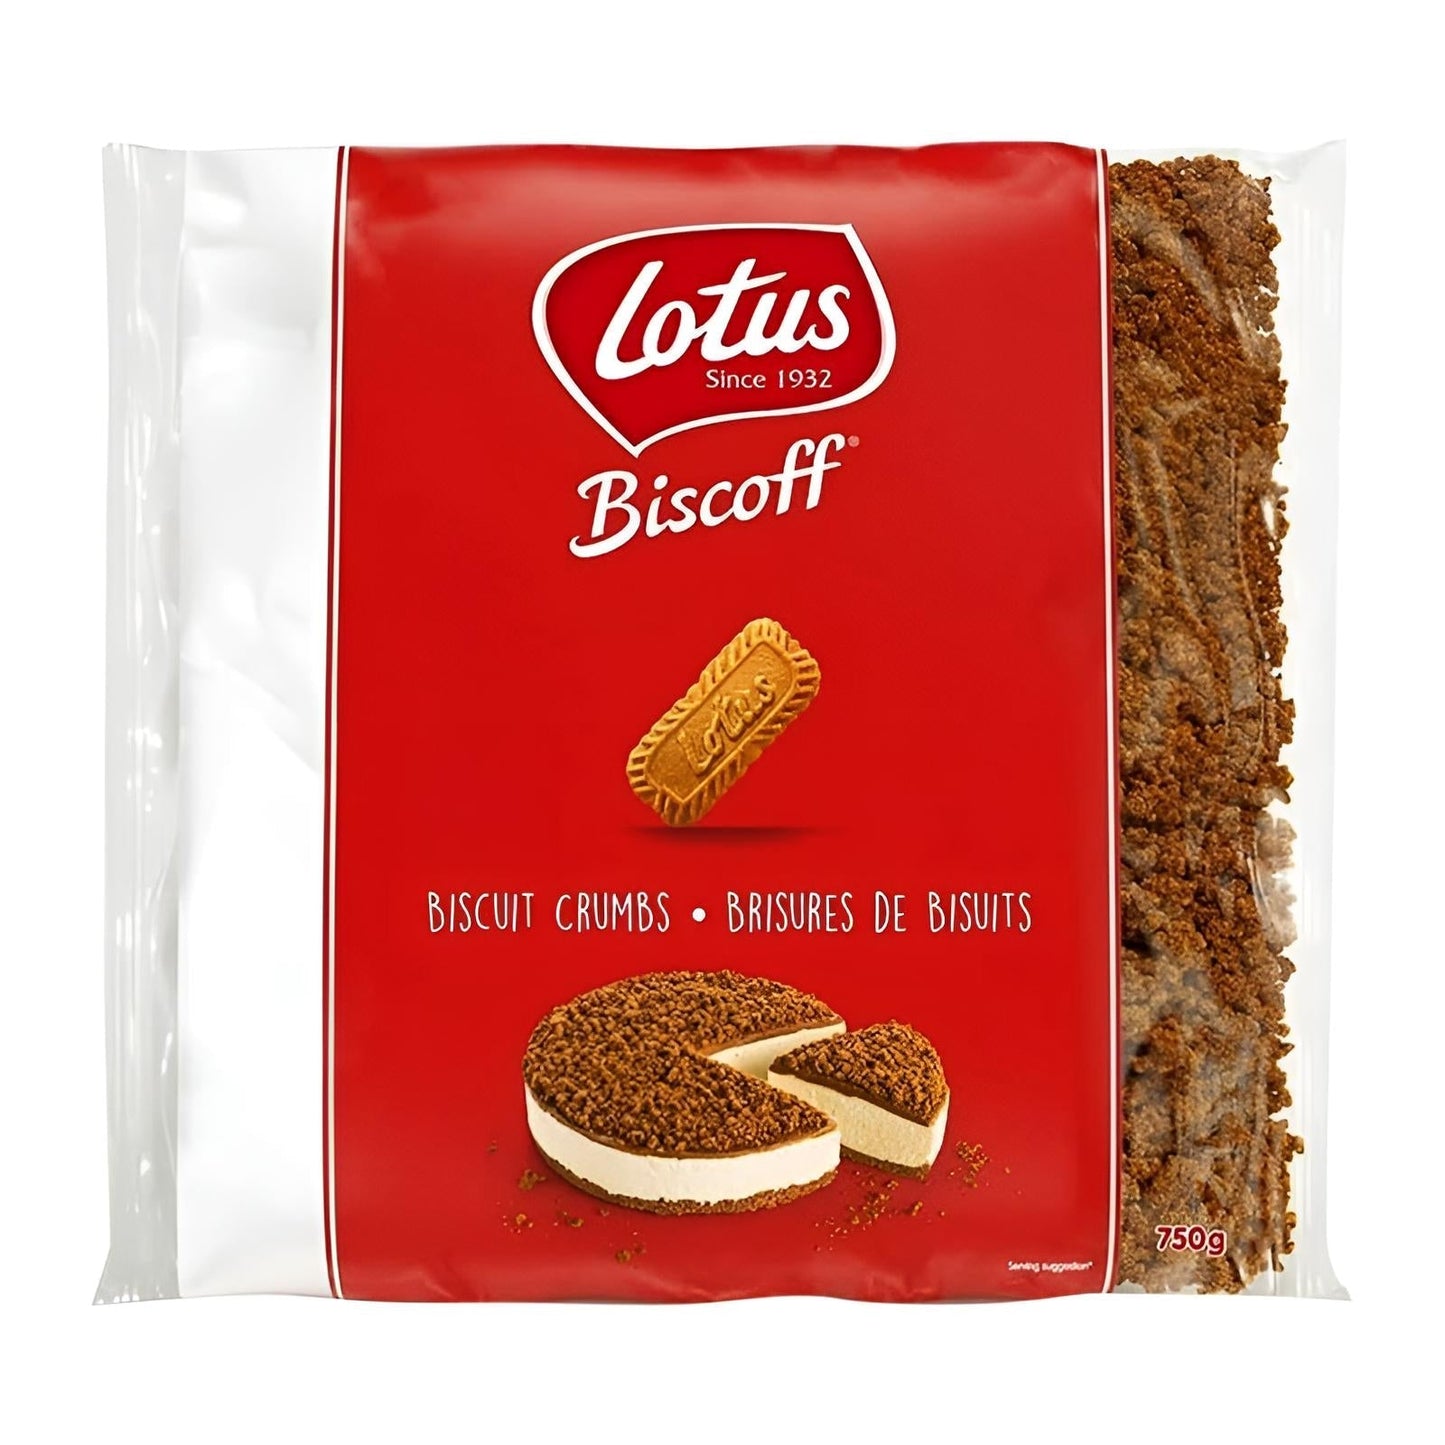 Lotus Biscoff Biscuit Crumbs 750g Pack